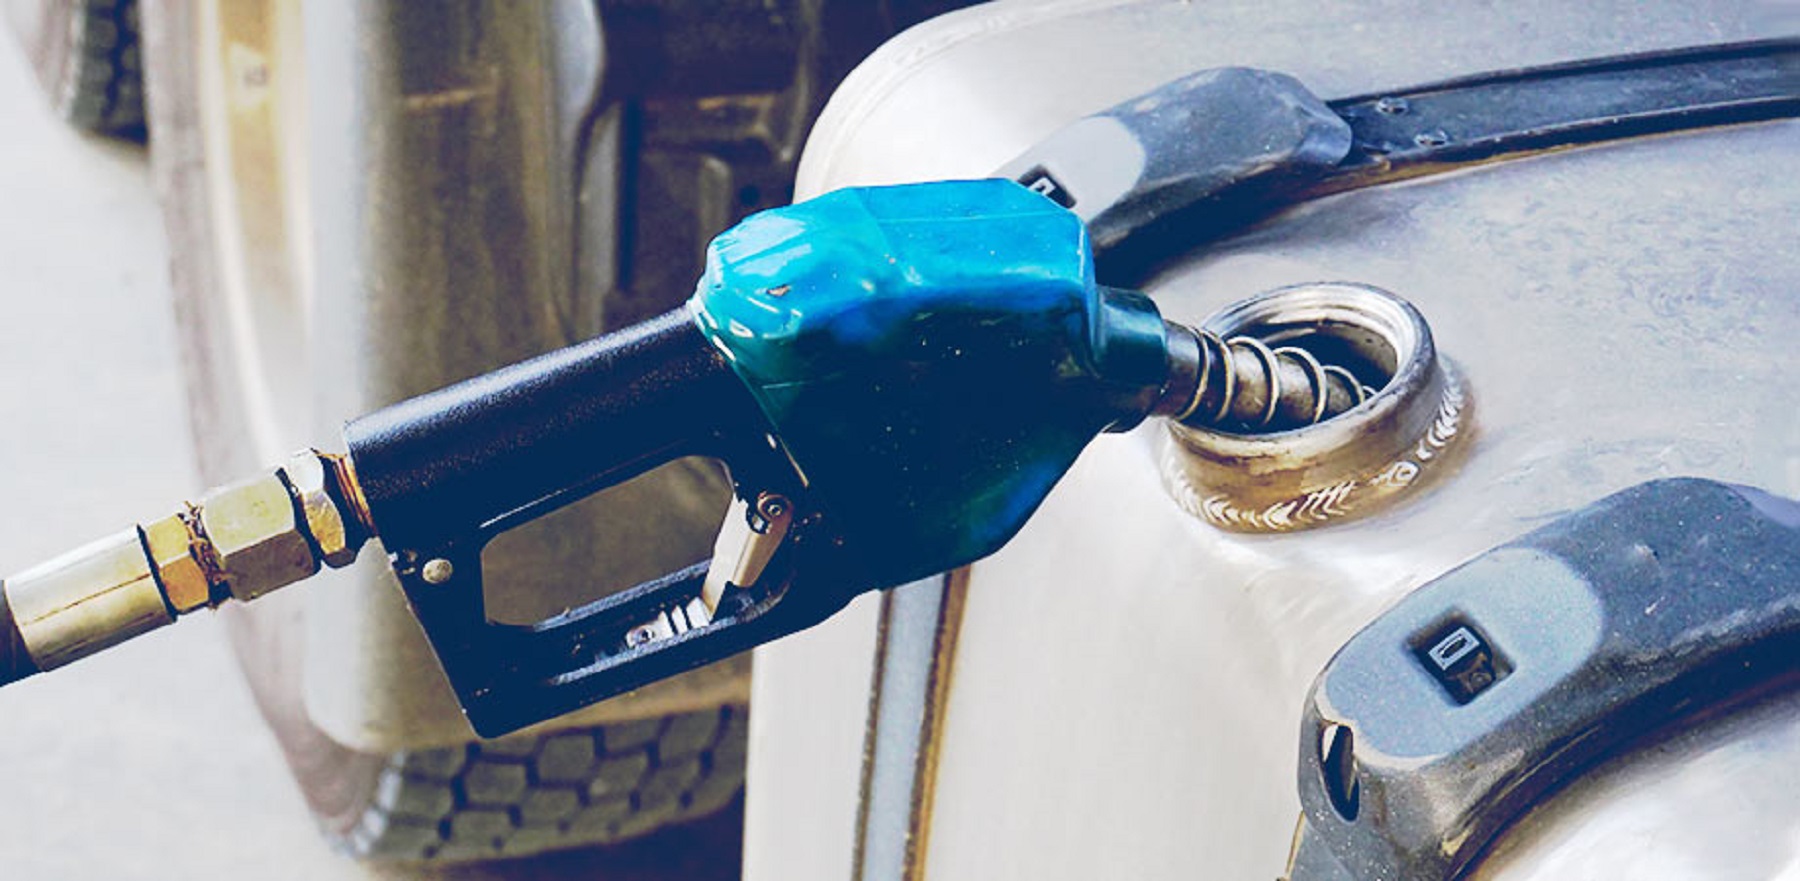 Diesel fica mais barato no acumulado de janeiro a julho, segundo pesquisa